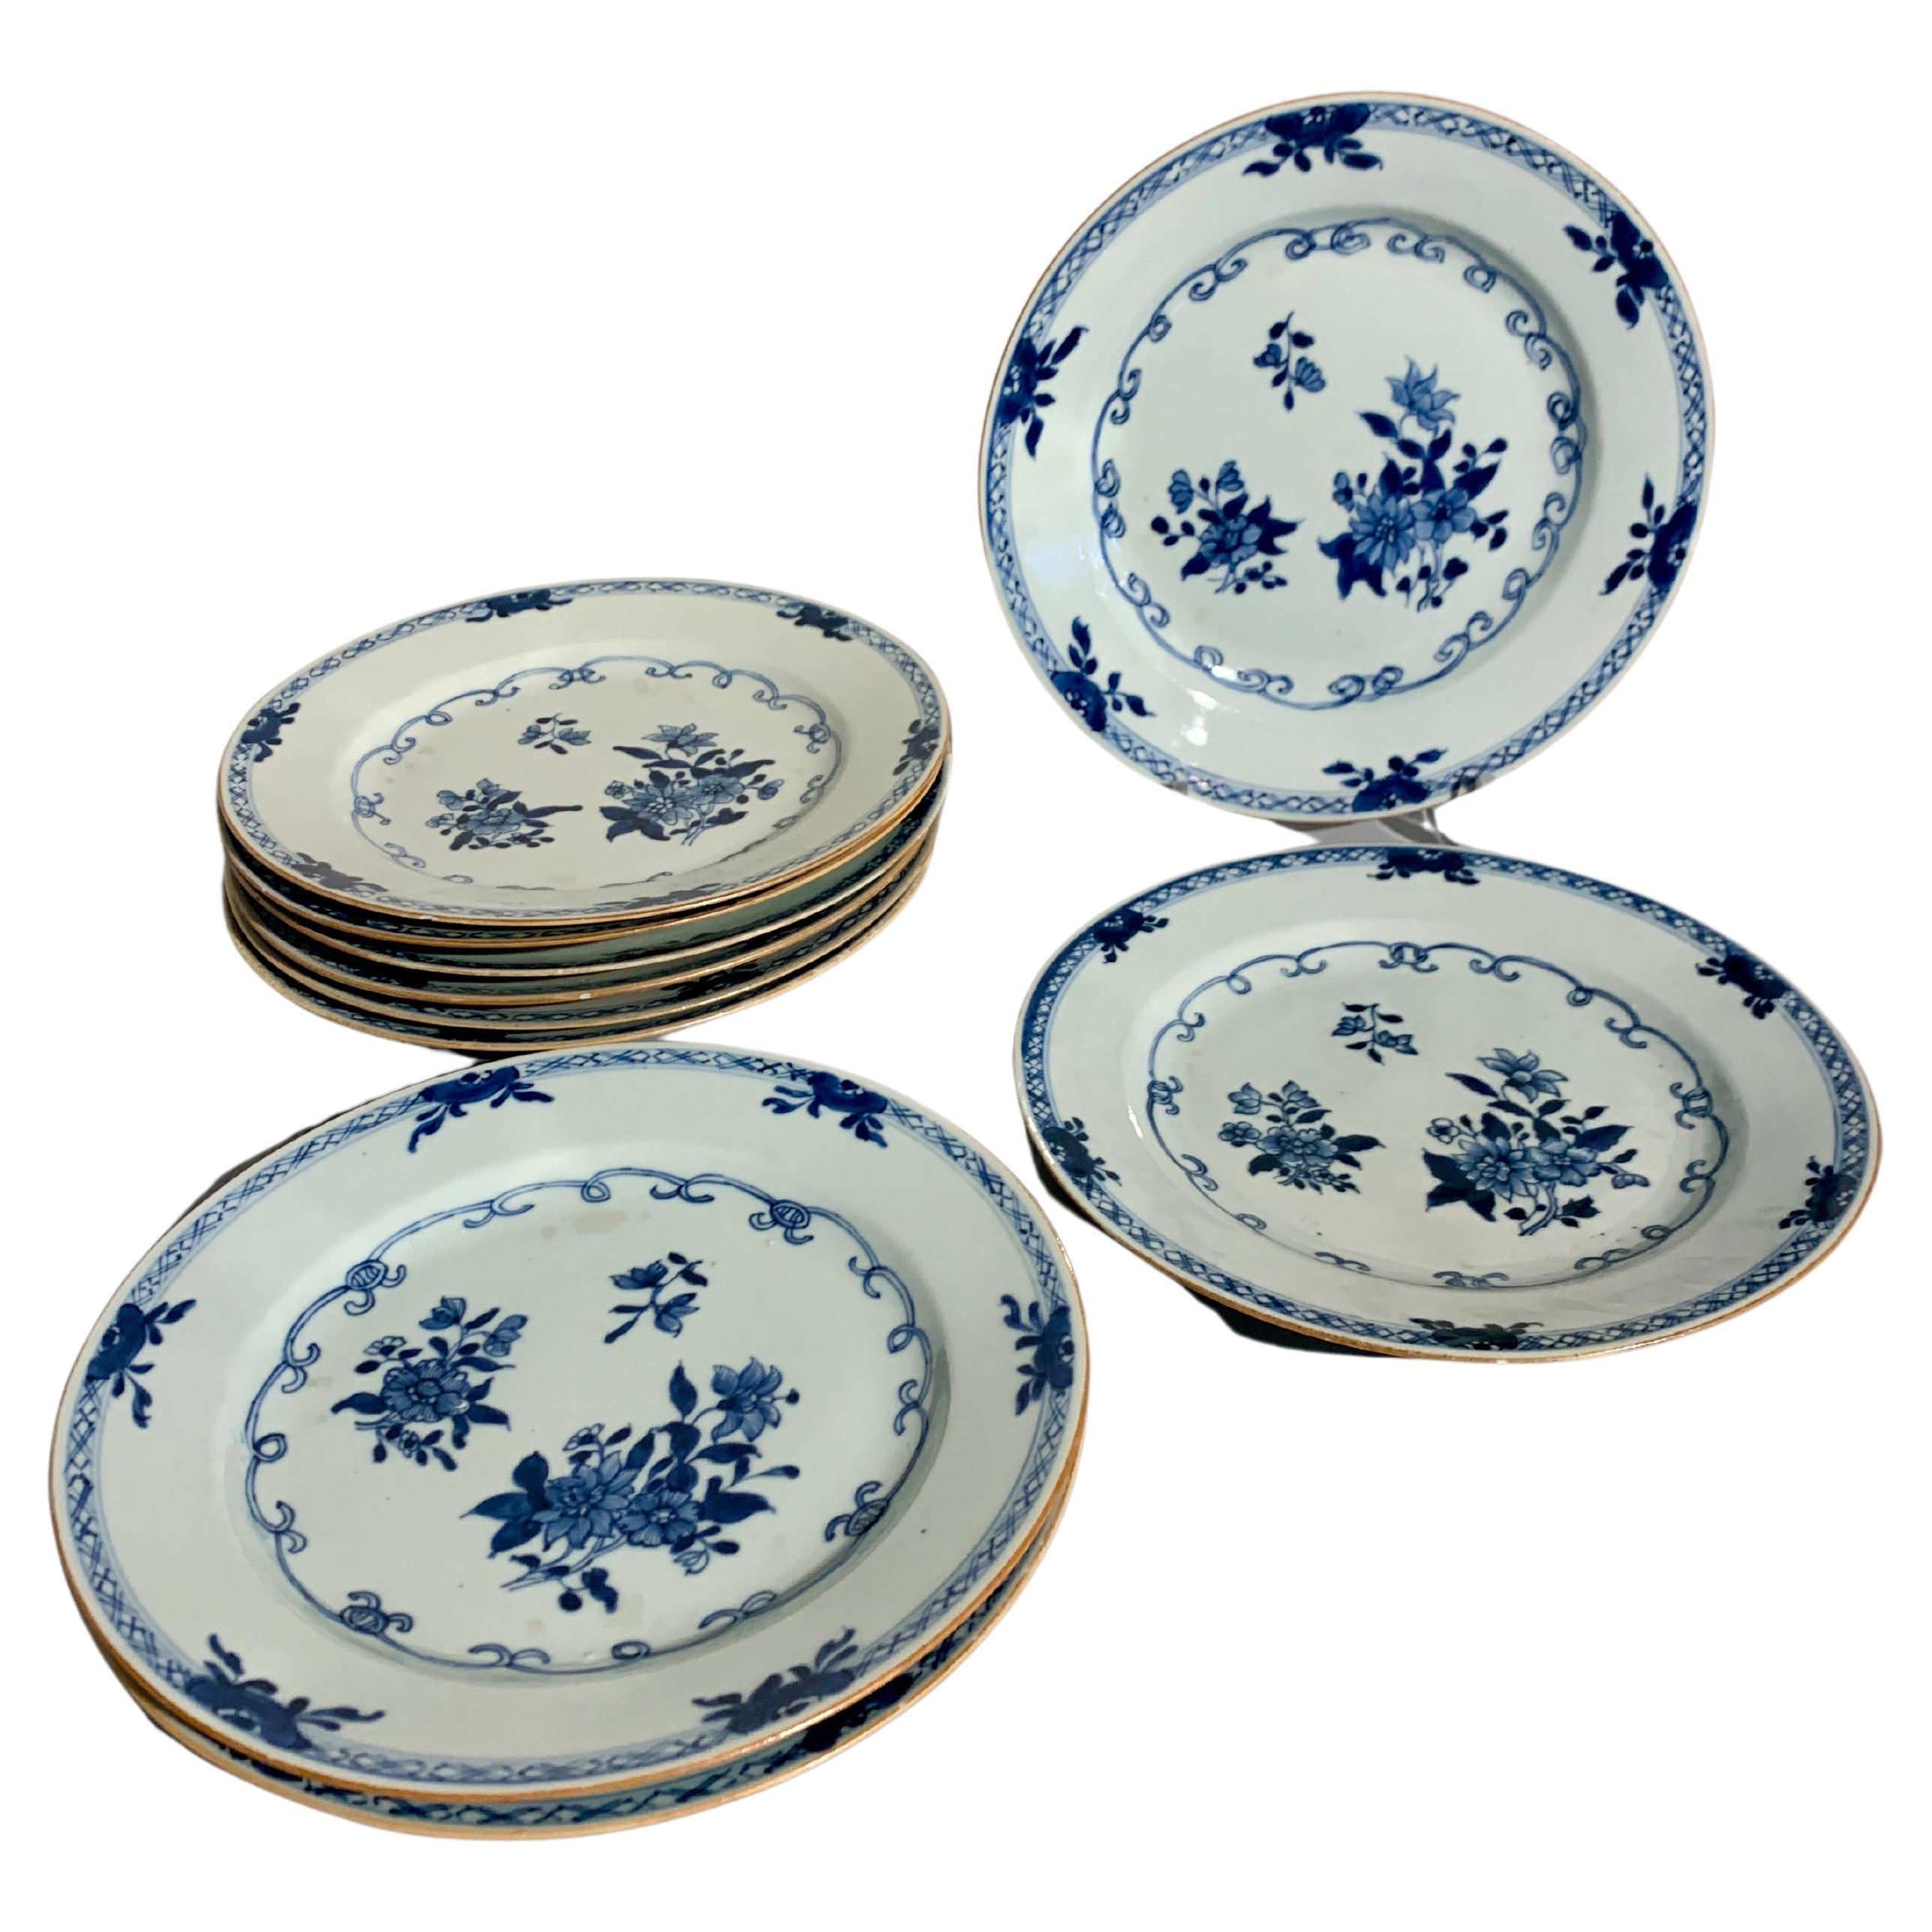 Assiettes en porcelaine bleue et blanche d'exportation chinoise, lot de 10, 18ème siècle, Chine